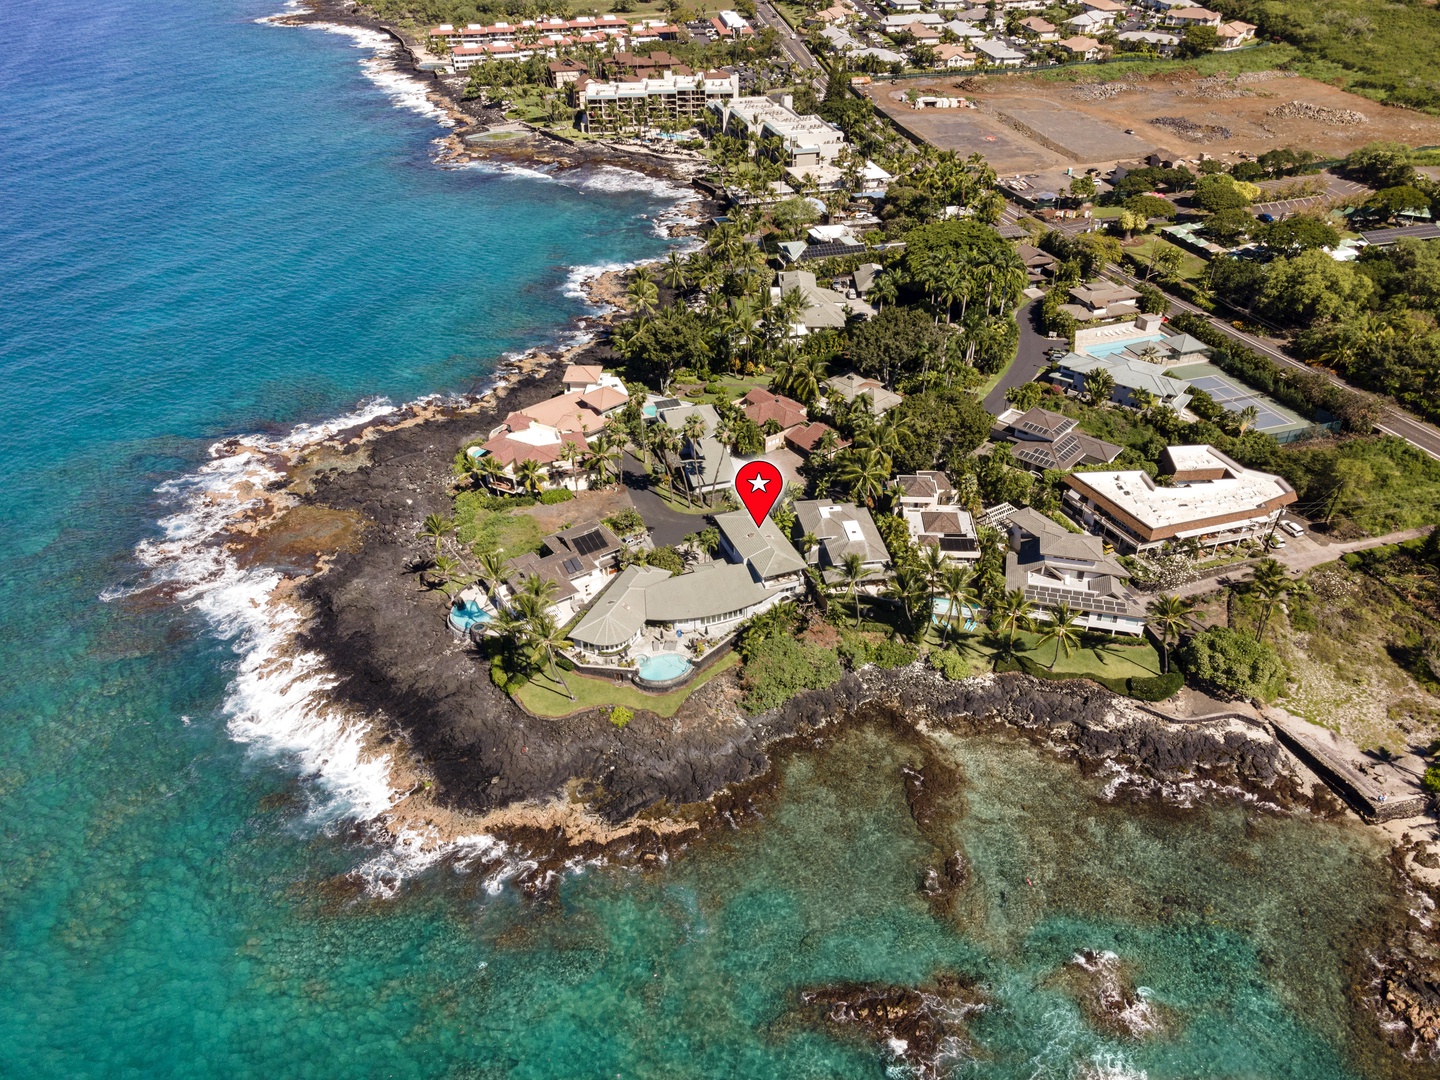 Kailua Kona Vacation Rentals, Ali'i Point #7 - Stunning location